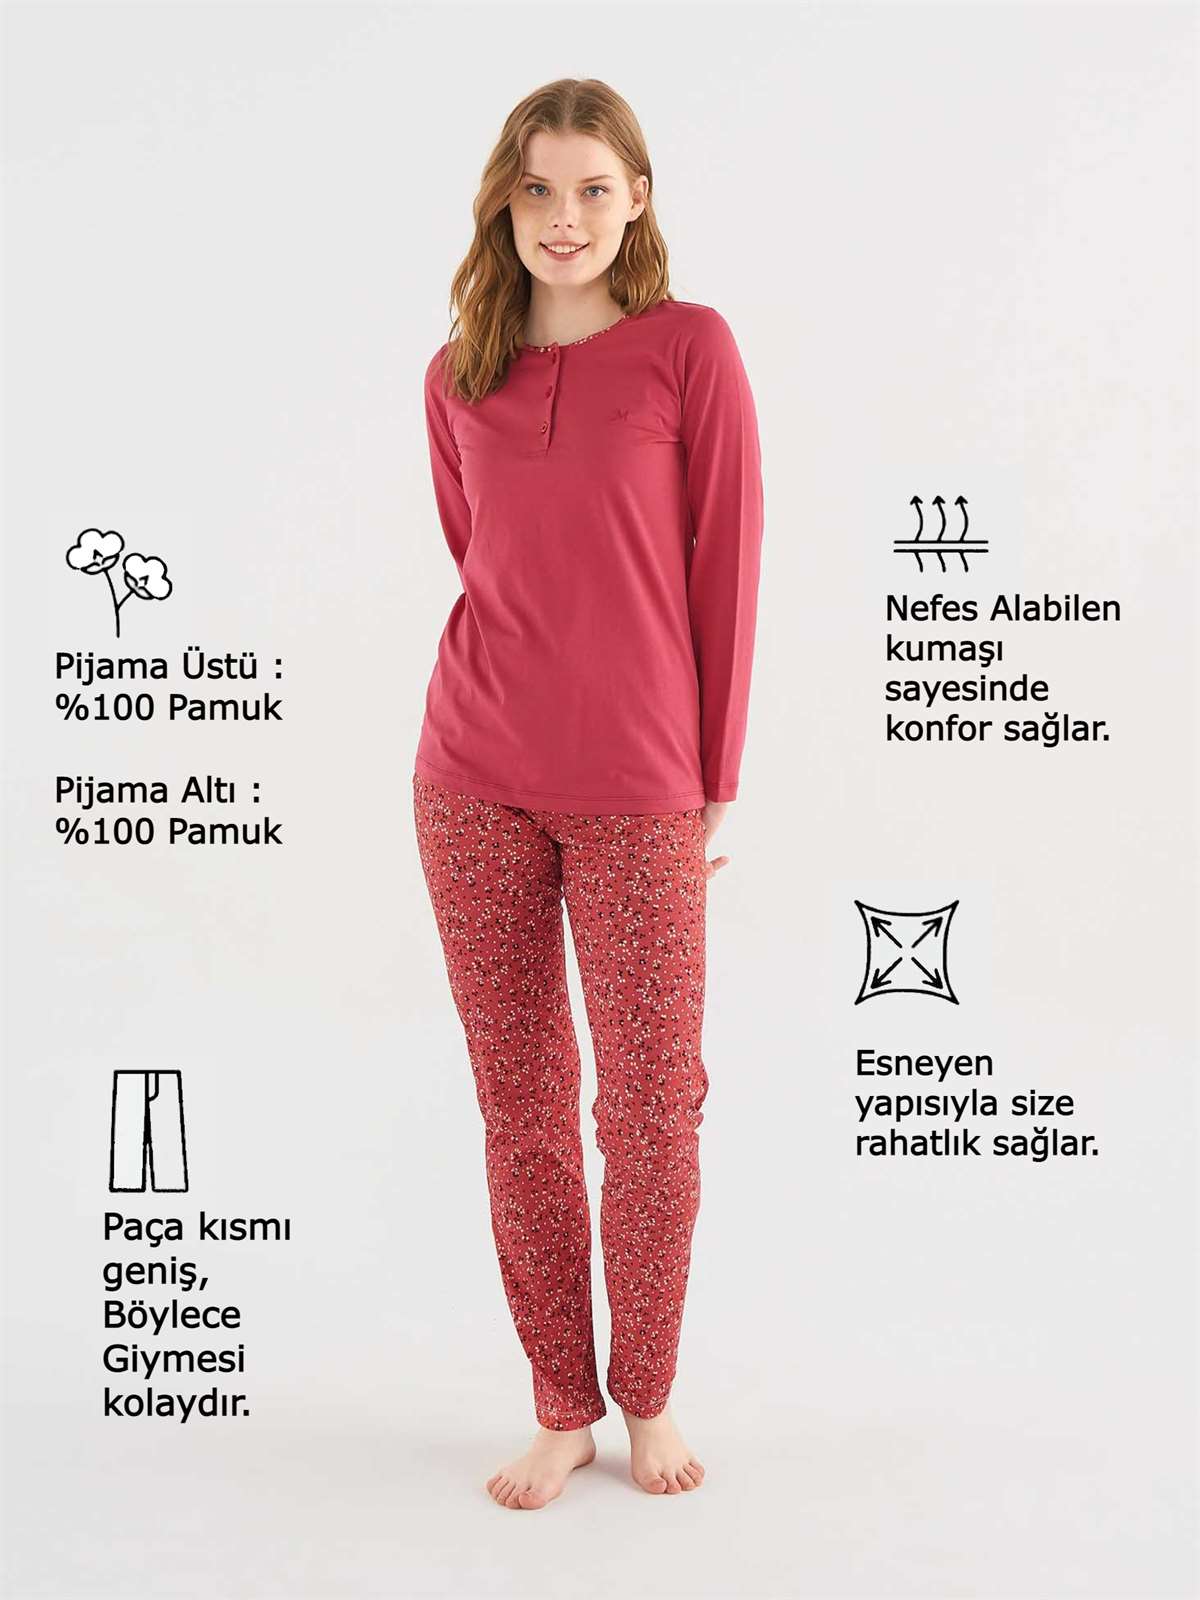 Mod Collection Patlı Pijama Takımı | Pijamanya.com